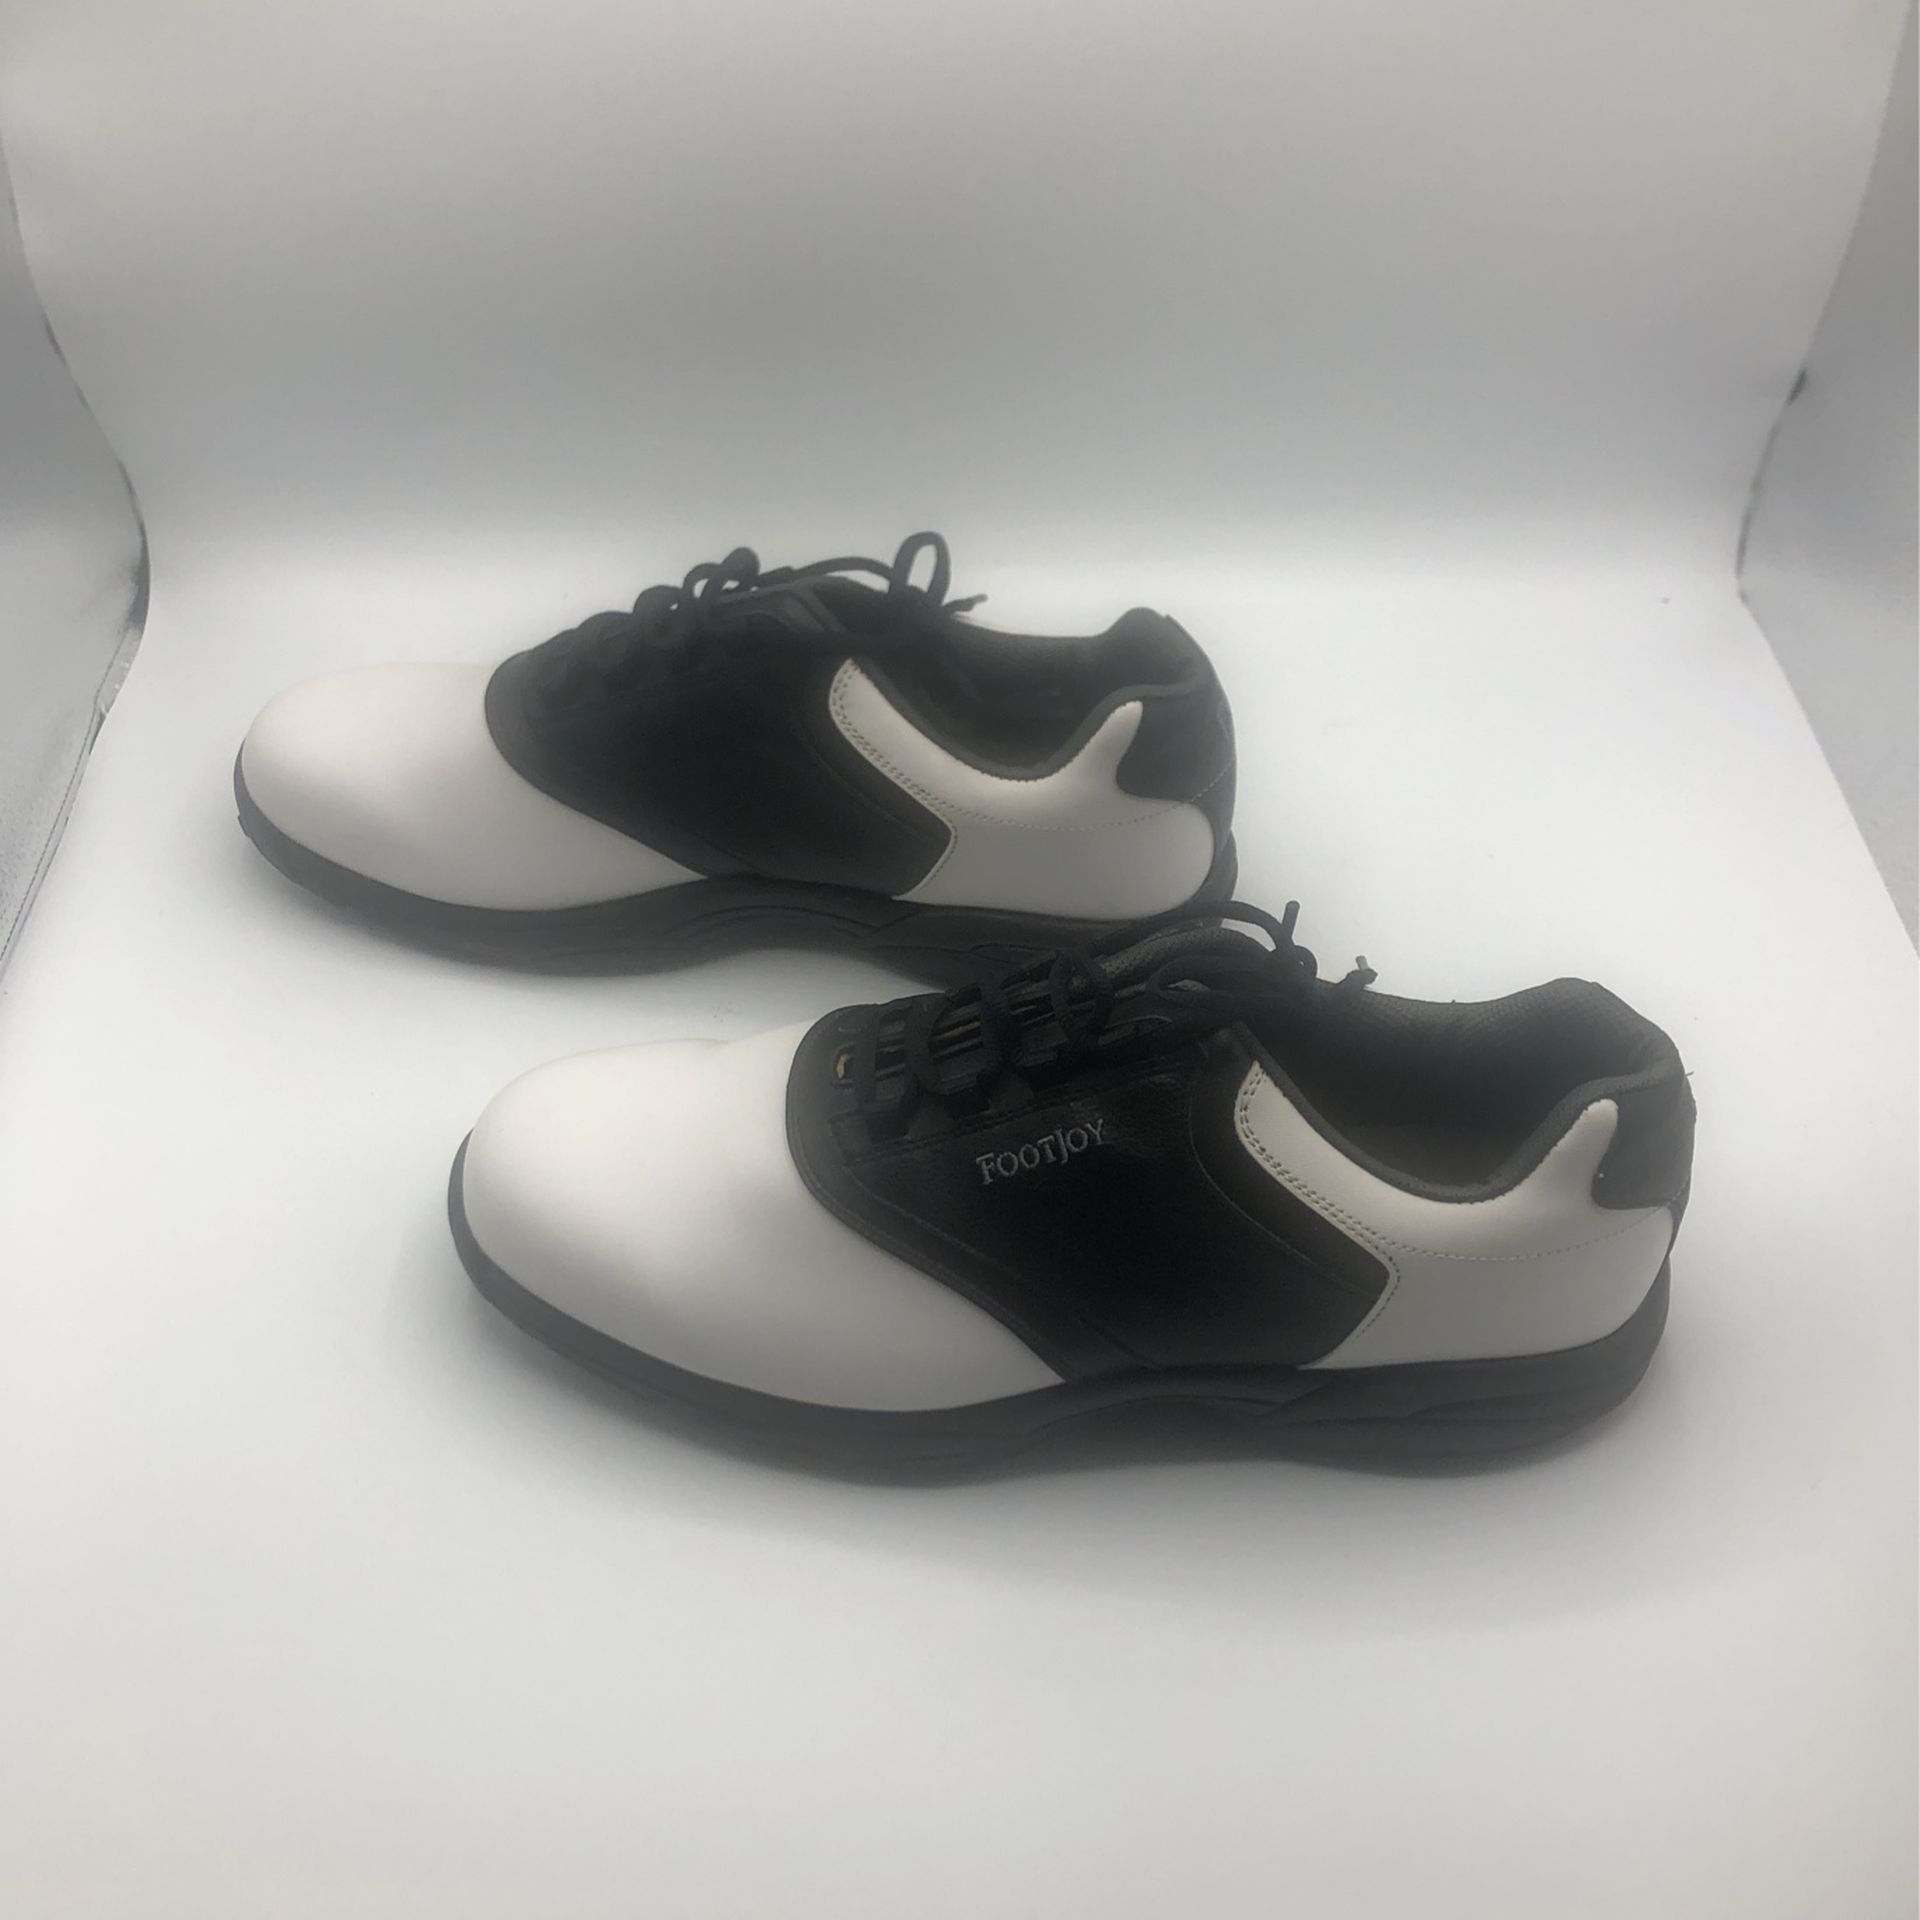 FootJoy Golf Contour45329  Flexzone Black/white Shoes Size 13M